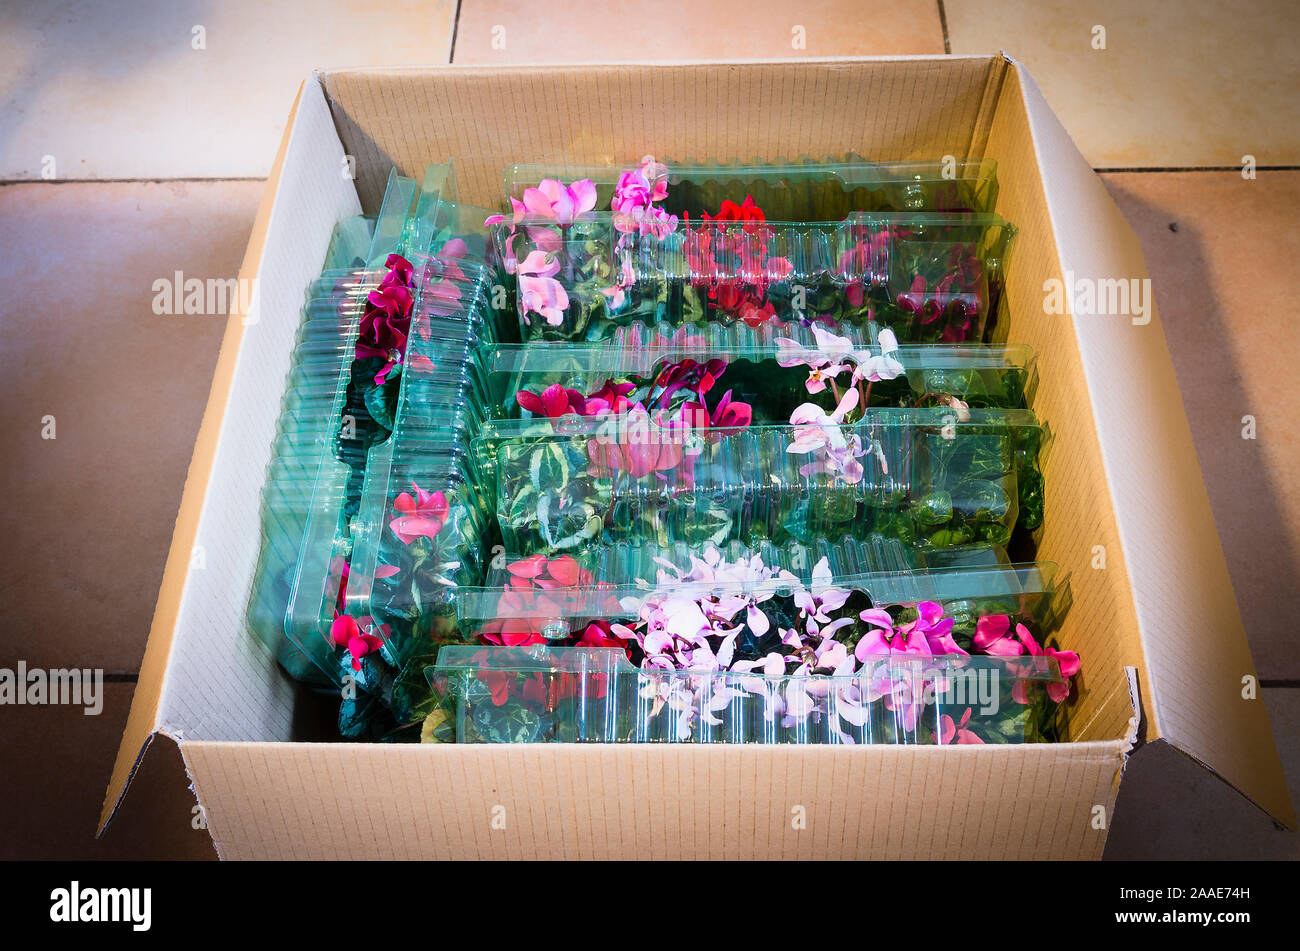 Un Mail-order fort s'ouvrit pour révéler une collection de jeunes plantes en pot fjlowering Cyclamen persicum souche Métis achetés en ligne montrant effectove bprotection d Banque D'Images